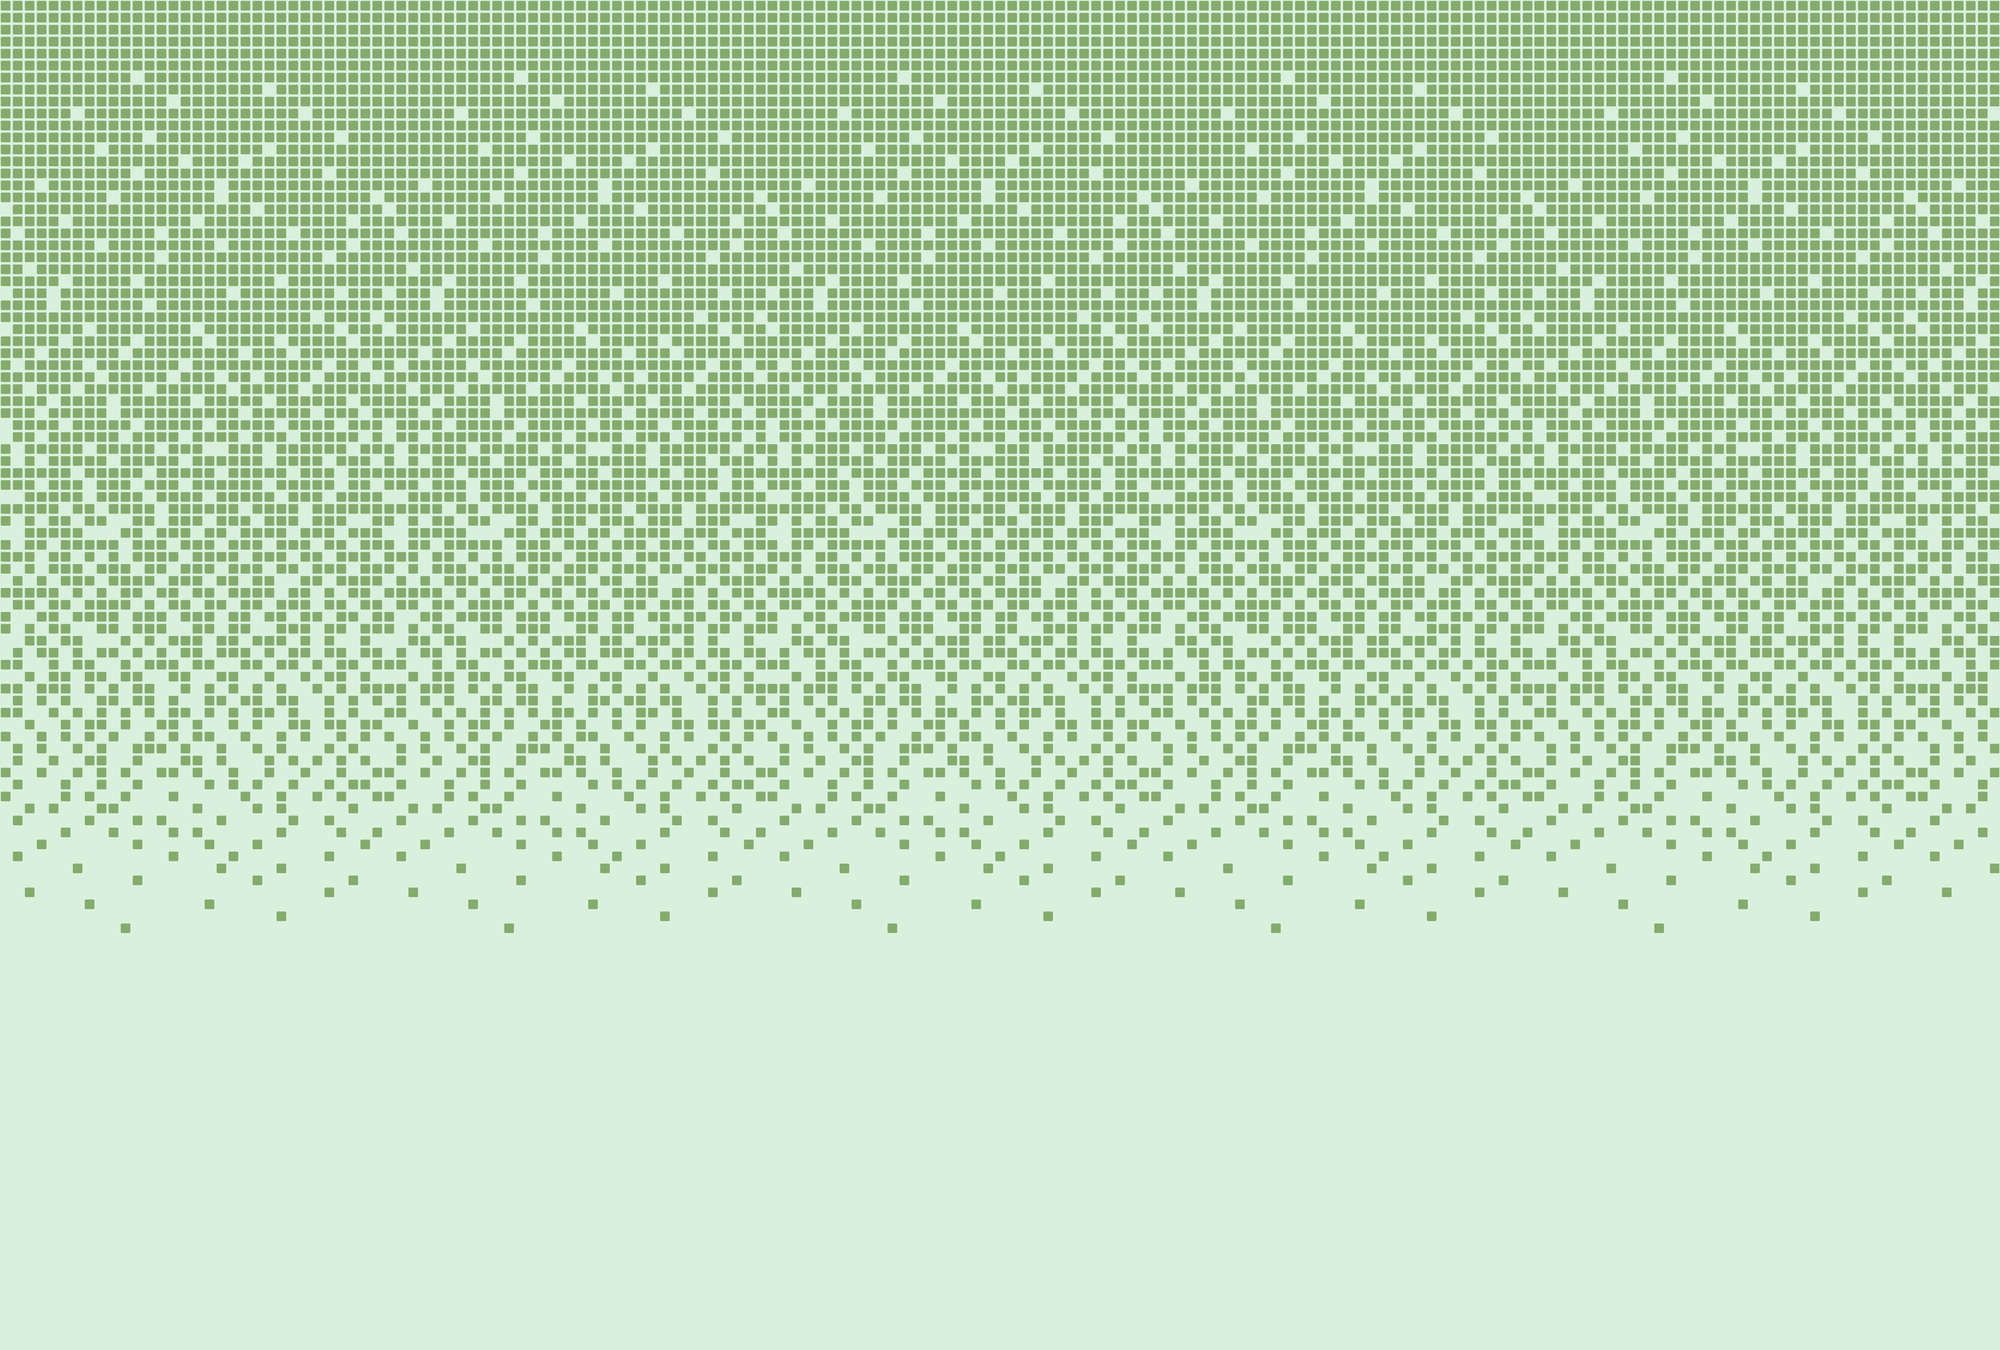             papier peint en papier panoramique »pixi mint« - motif mosaïque style pixel - vert | intissé légèrement structuré
        